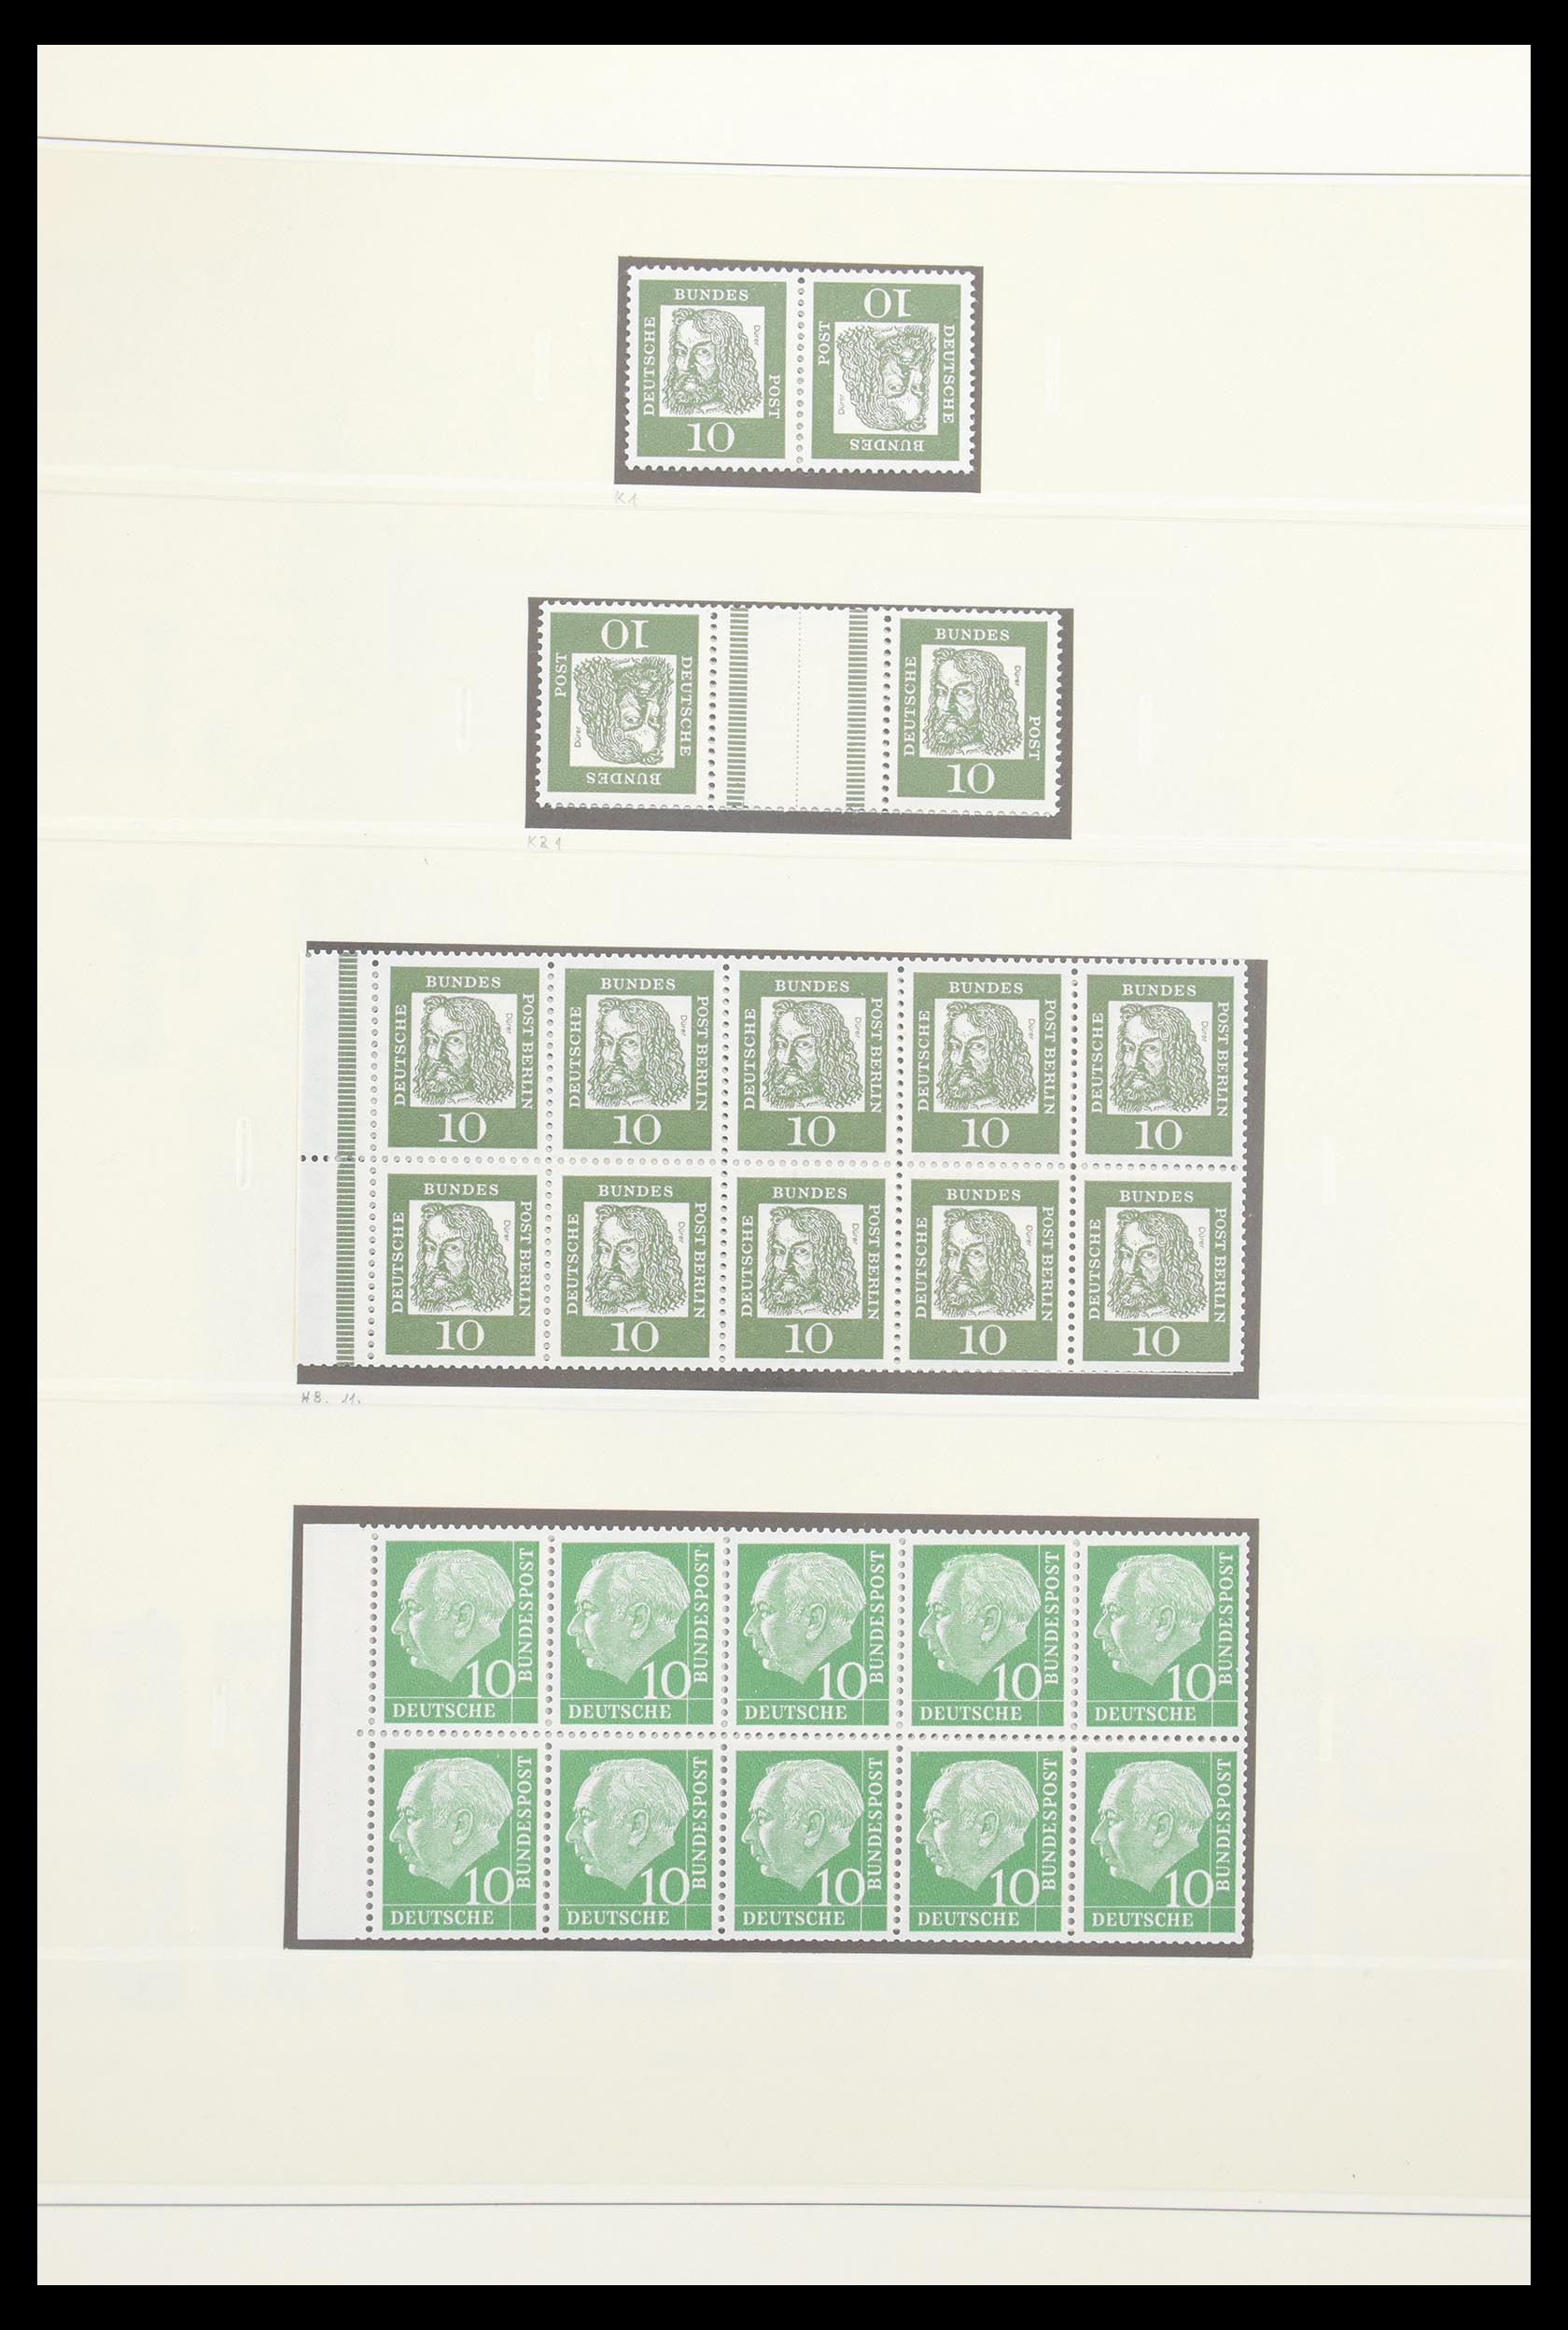 30605 017 - 30605 Bundespost combinaties 1951-1974.